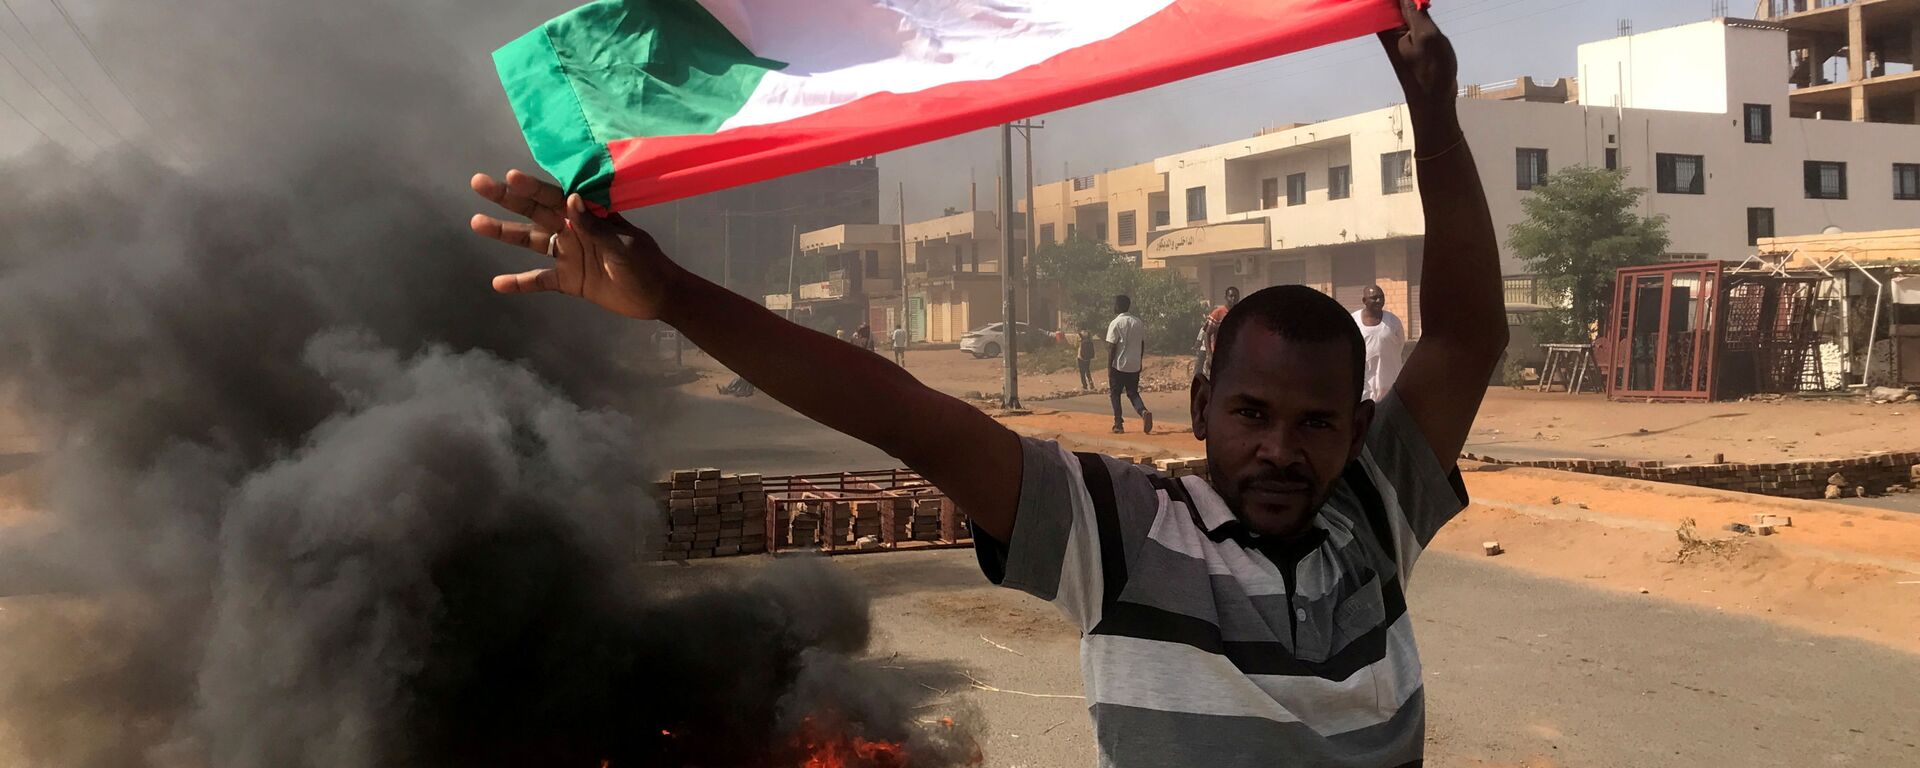 مظاهرات في شوارع مدينة الخرطوم، السودان 25 أكتوبر 2021 - سبوتنيك عربي, 1920, 25.10.2021